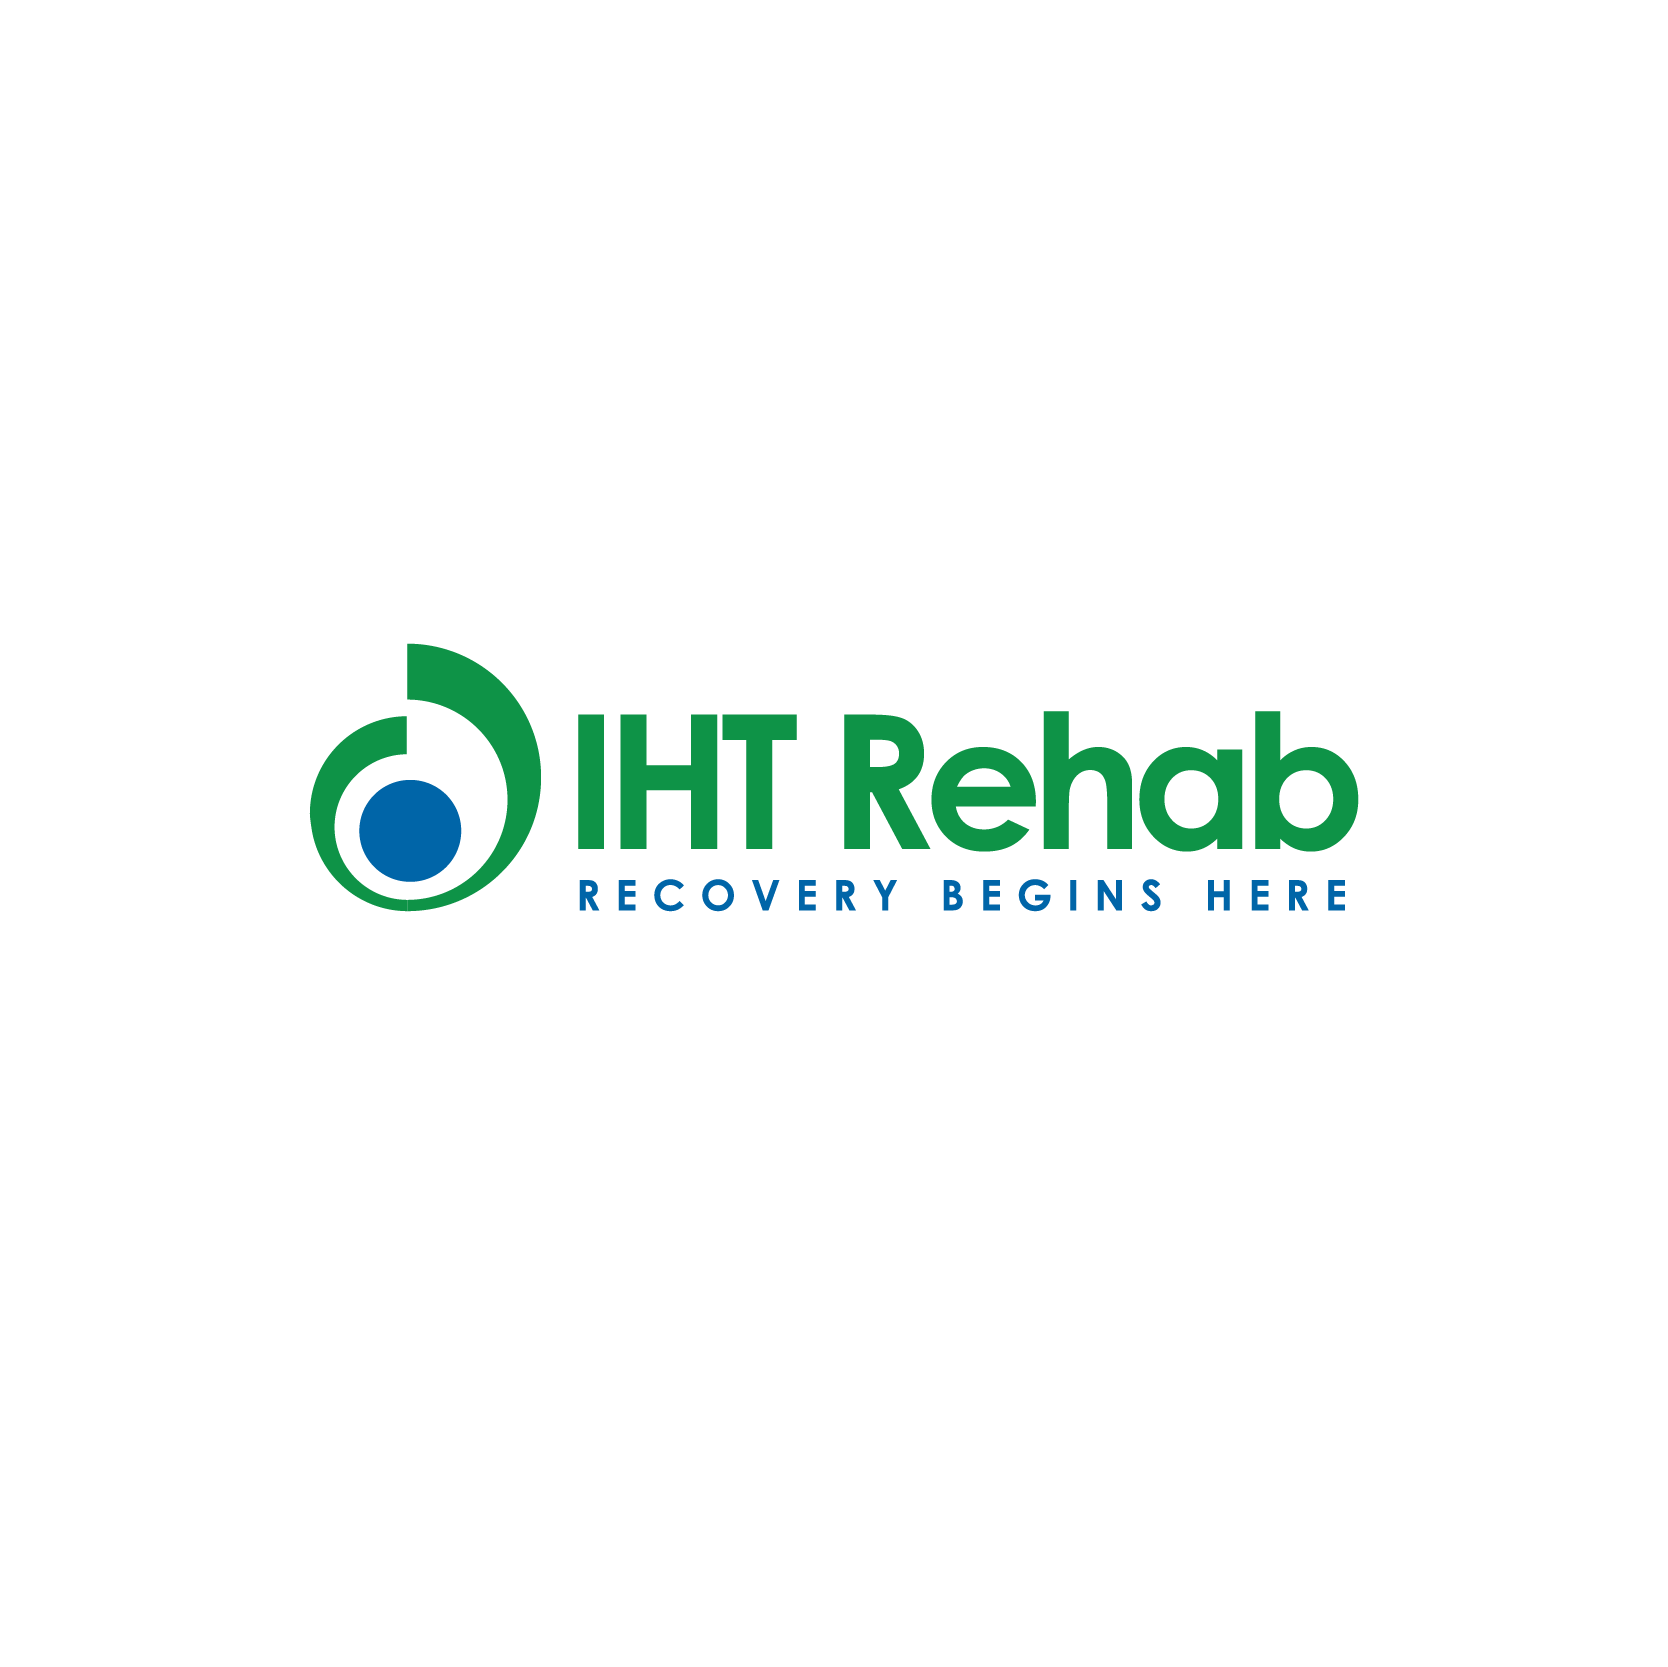 IHT Rehab Logo